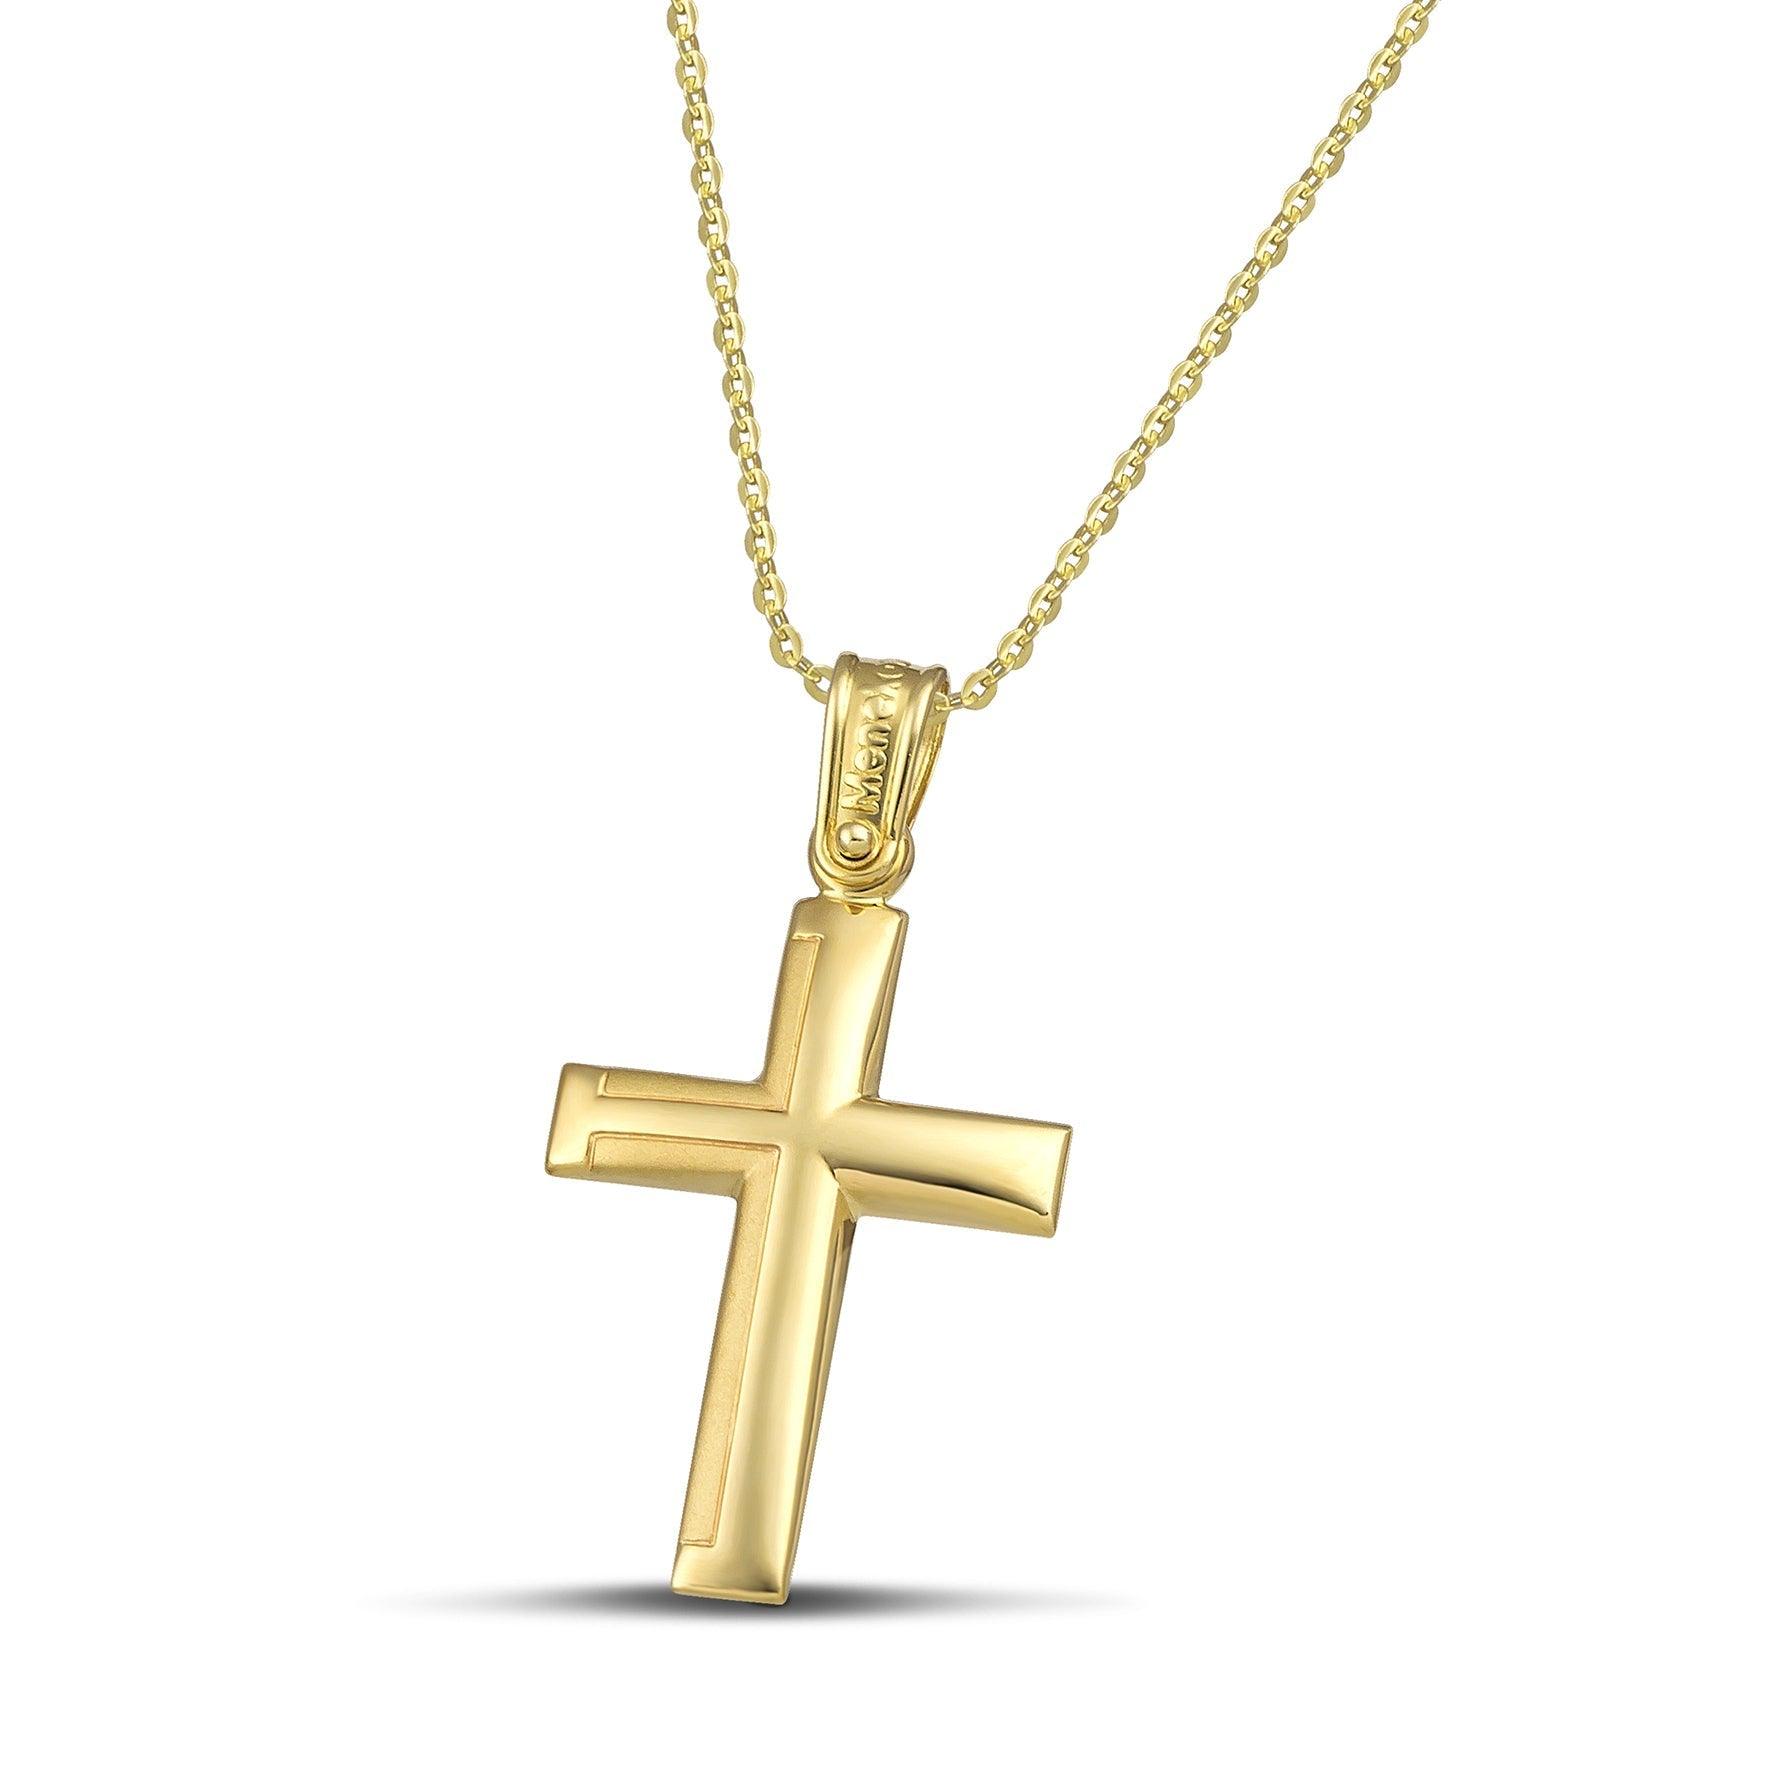 Ανδρικός σταυρός από χρυσό Κ14 με ματ. Χειροποίητο κόσμημα με λεπτή αλυσίδα με κρίκους.